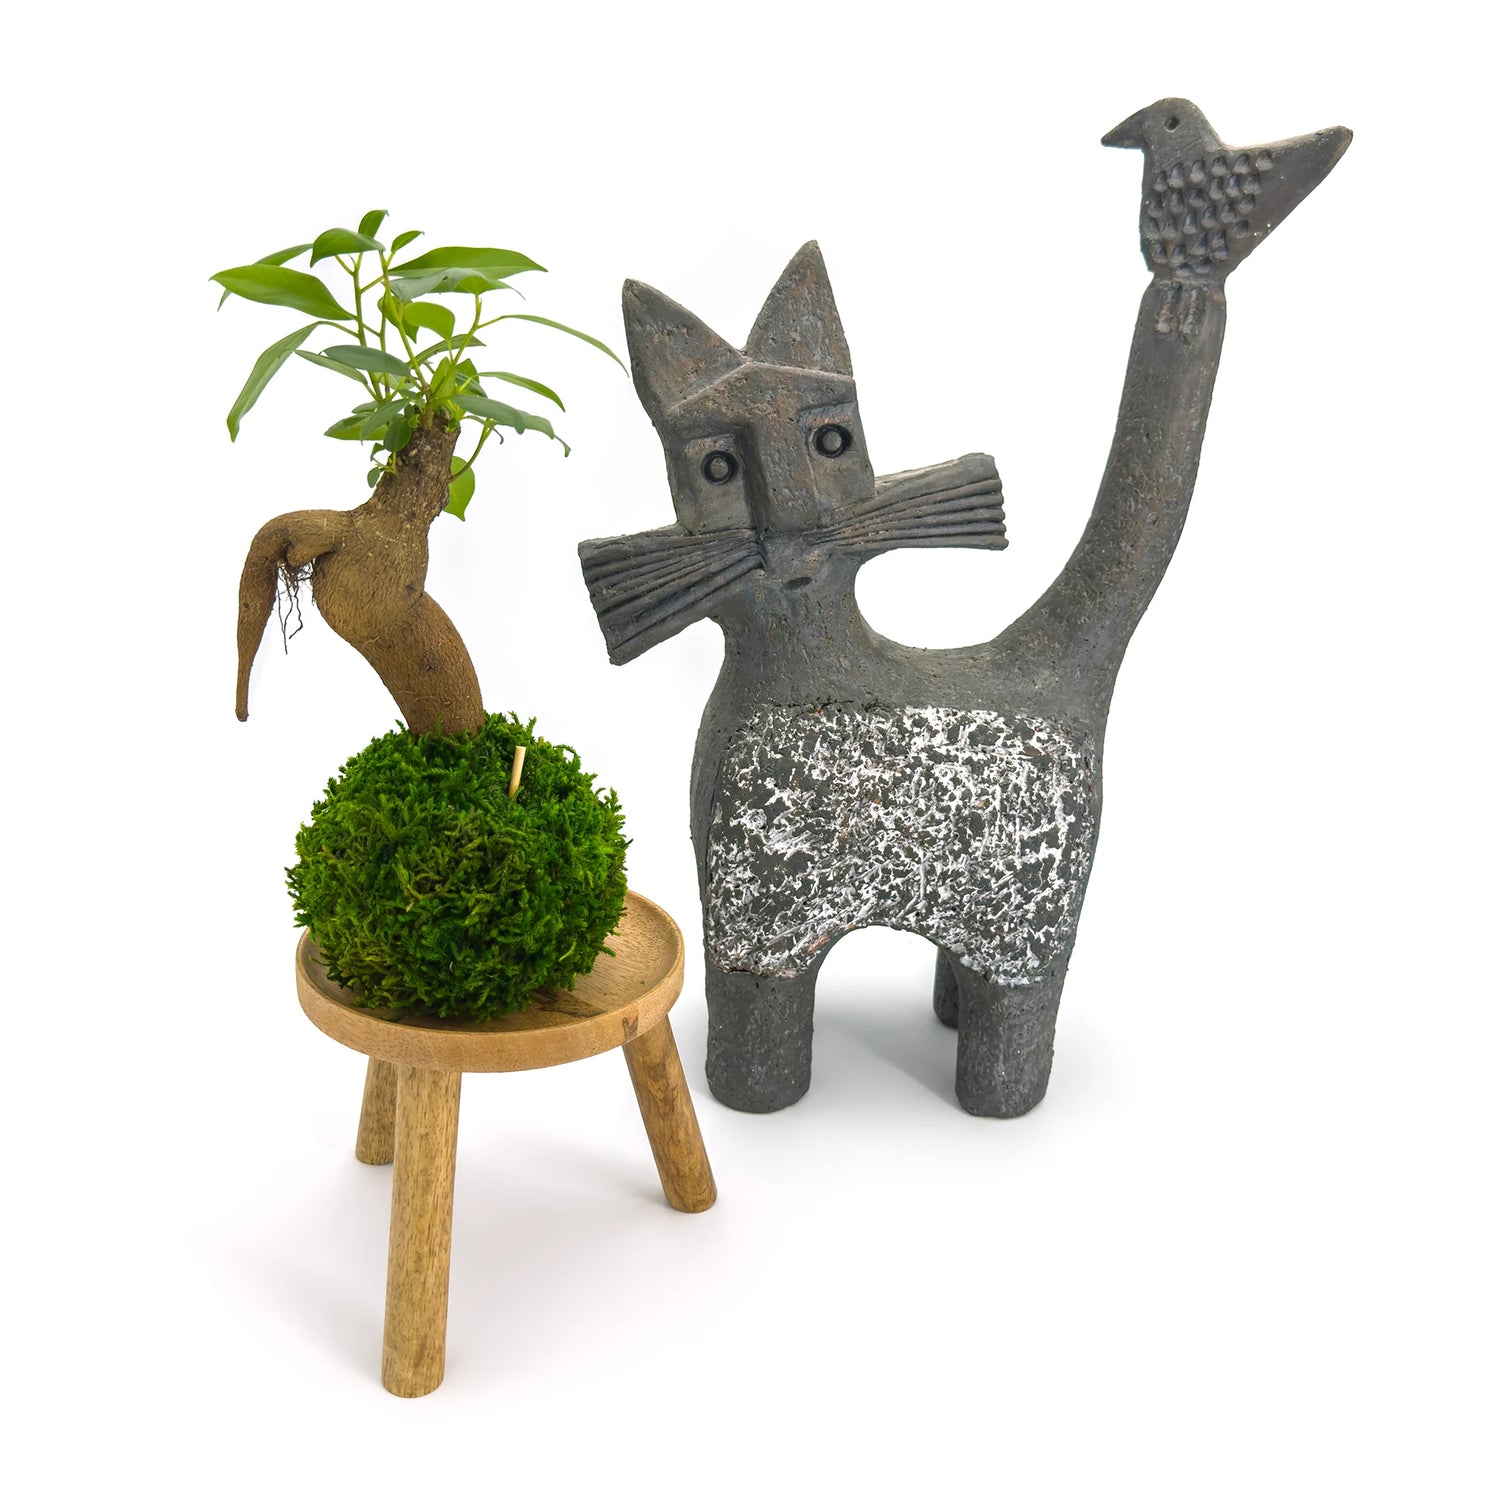 Composition avec un petit kokedama ficus ginseng microcarpa sur son support en bois avec une sculpture de chat en décoration